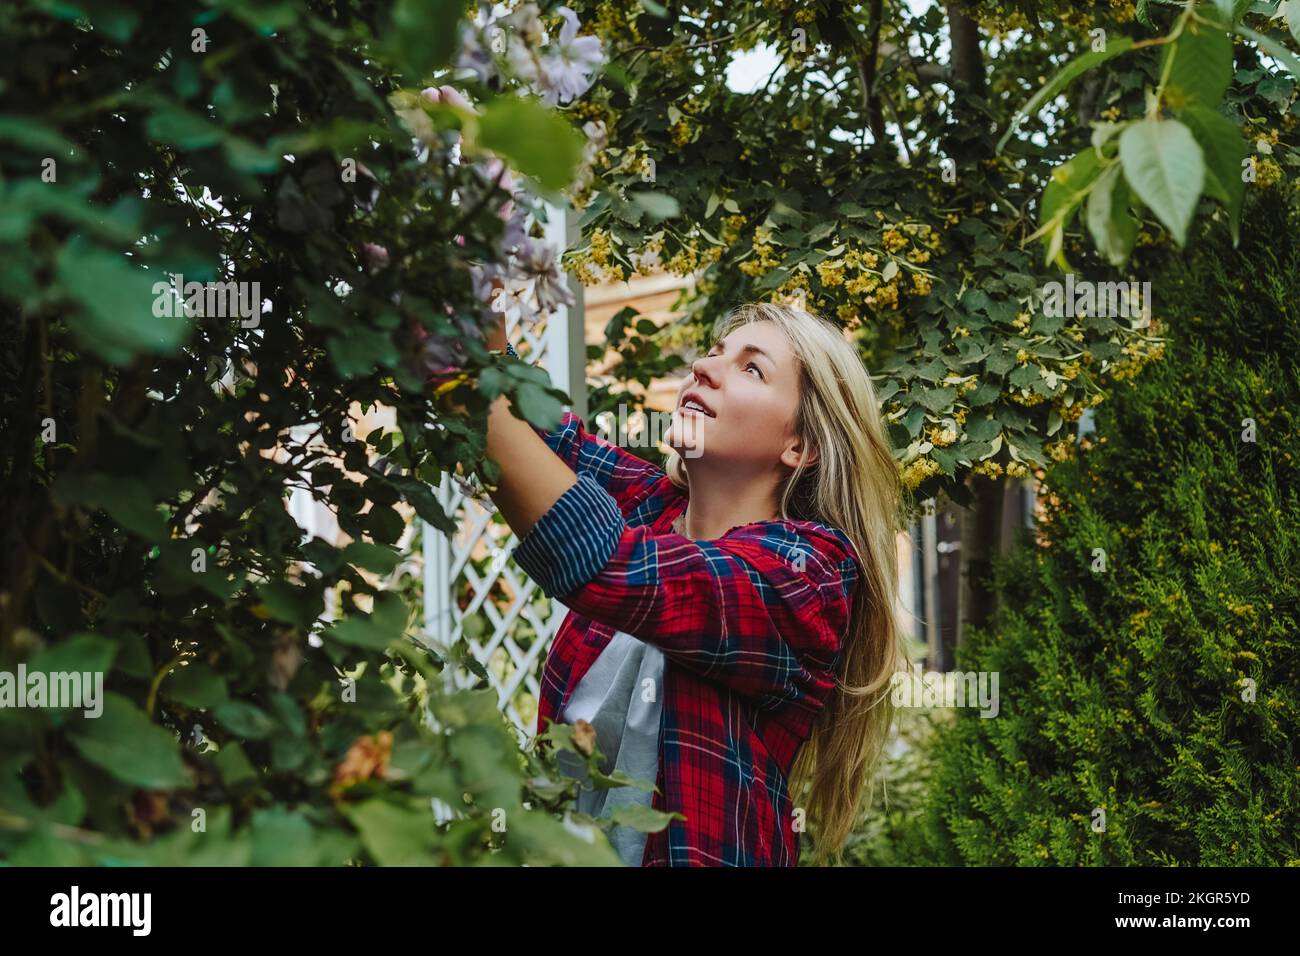 Frau mit blondem Haar, die Pflanze im Garten untersucht Stockfoto